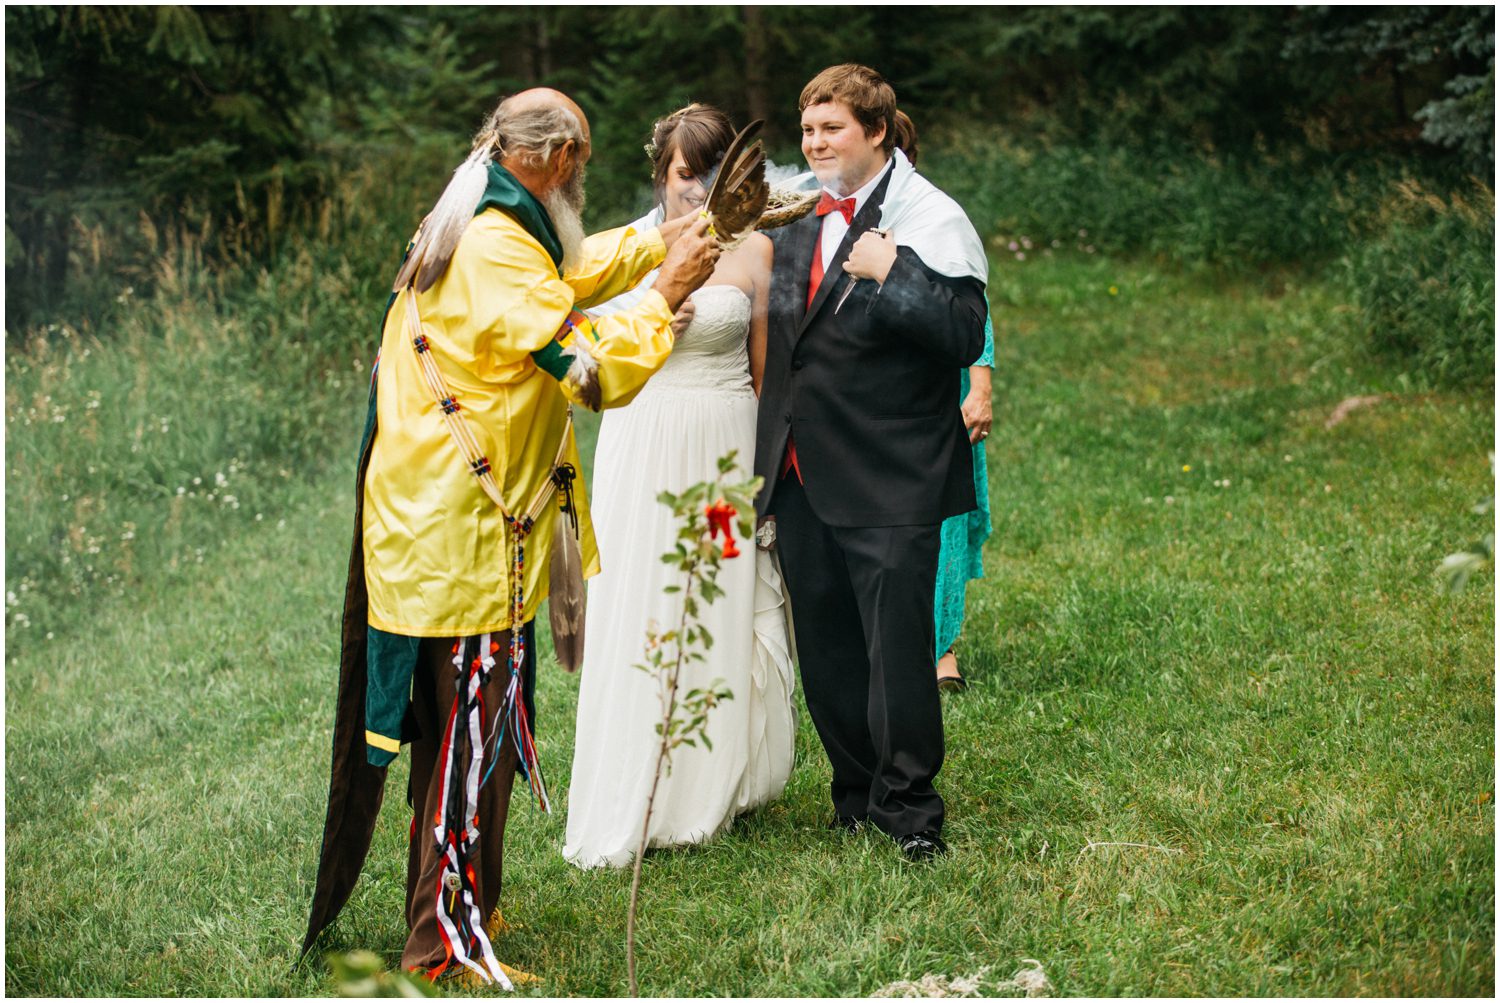 Native American Wedding Ceremony, Colorado Wedding Photographer, Evergreen Colorado Wedding Photographer, Unique Wedding Ceremony Traditions, Wedding Ceremony Ideas, Spiritual Wedding Ceremony